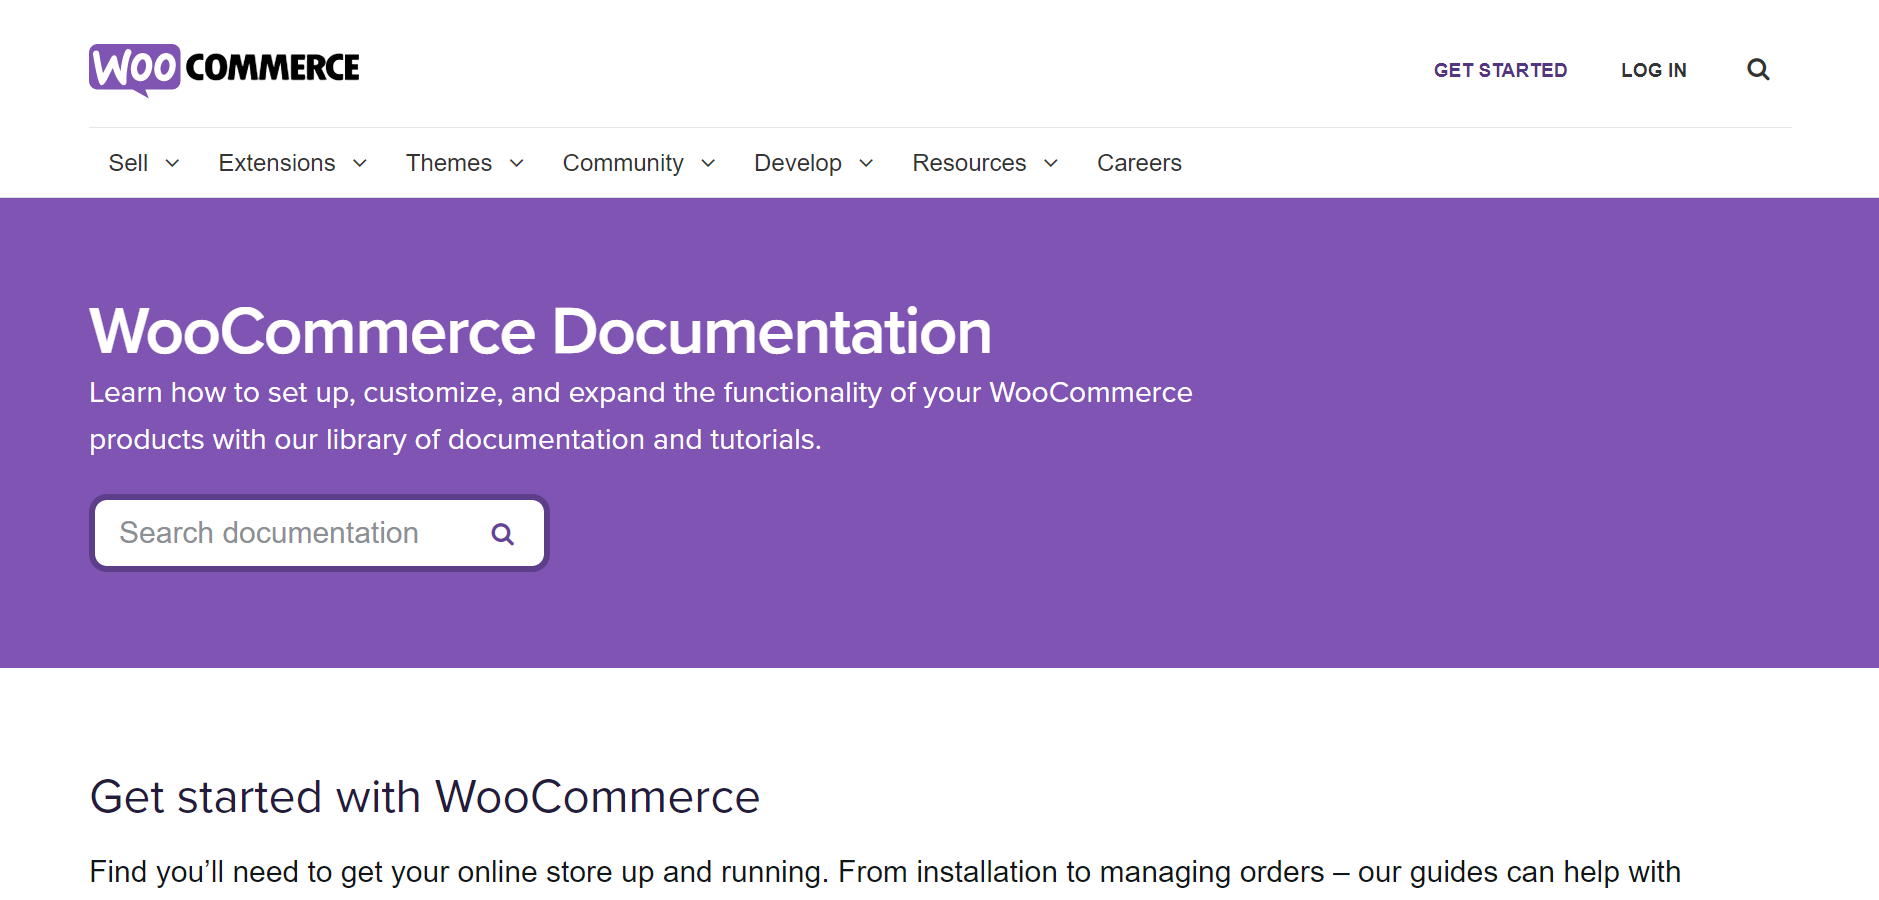 WooCommerce Documentation